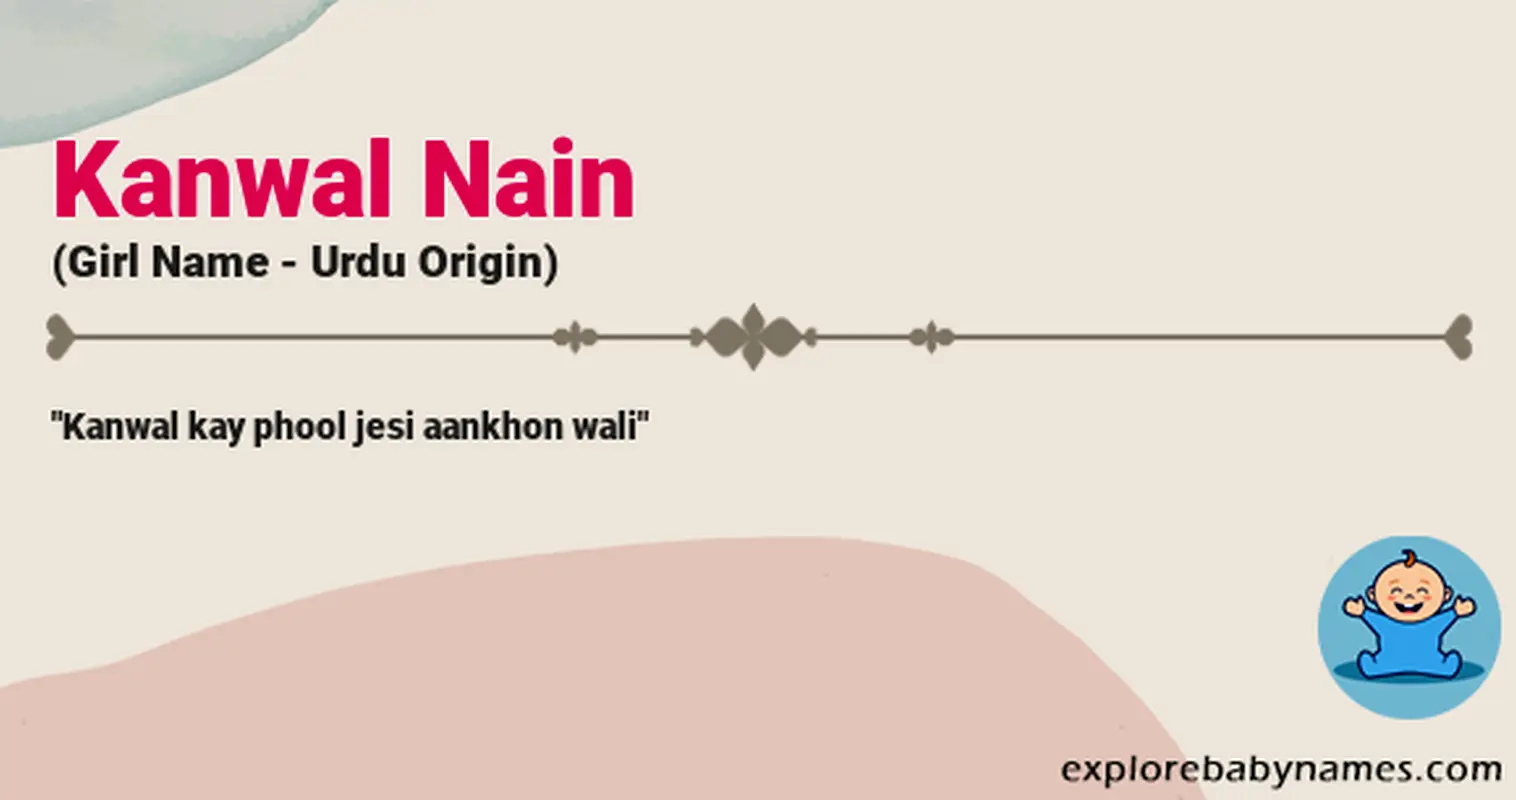 Meaning of Kanwal Nain